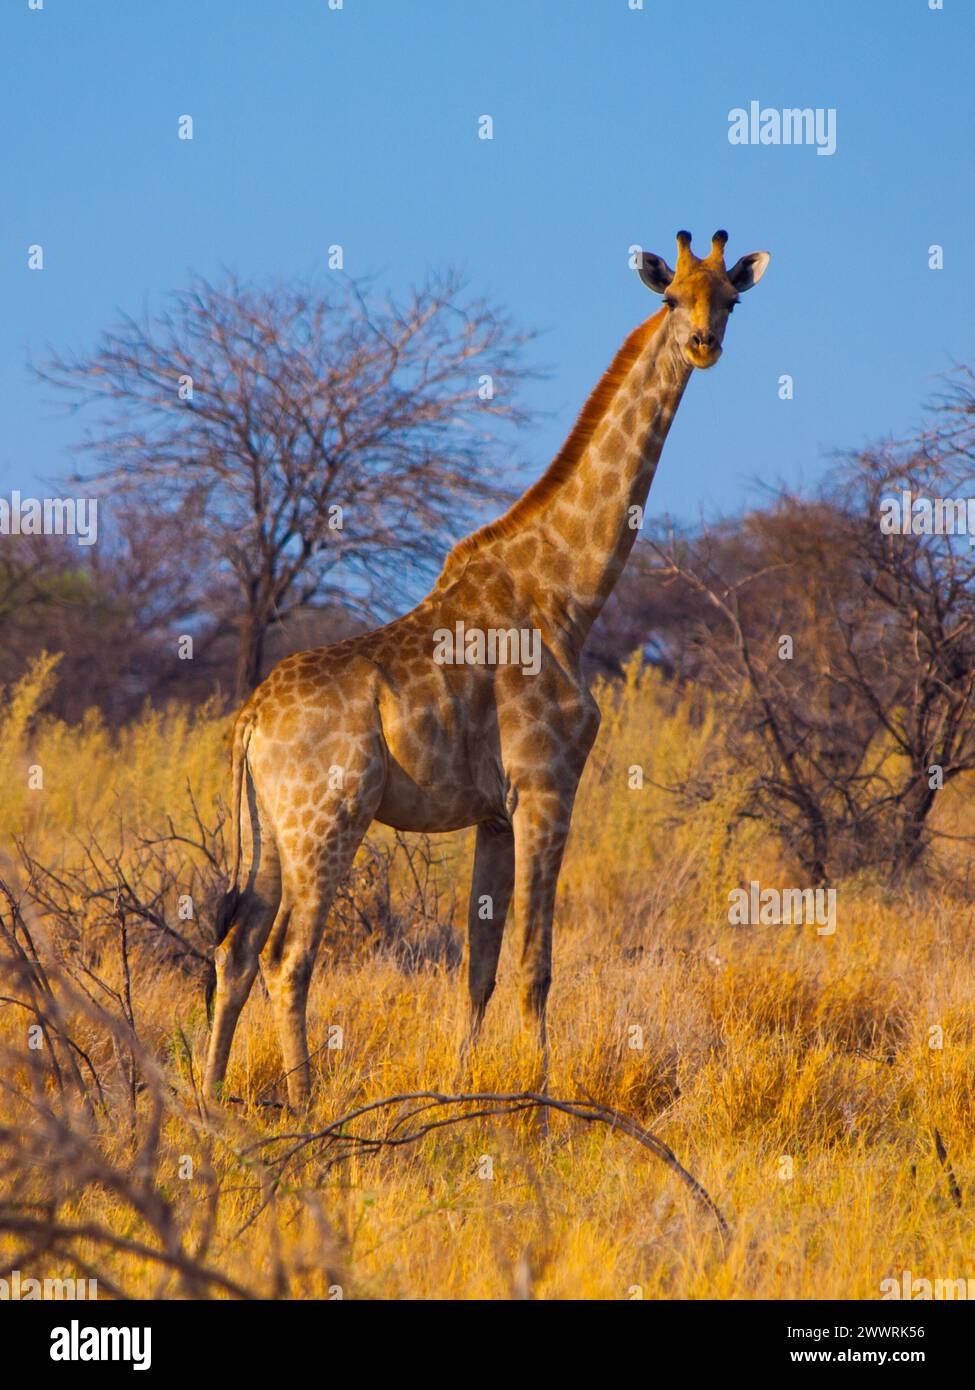 Giraffe standinf in yellow dry grass of savanna Stock Photo